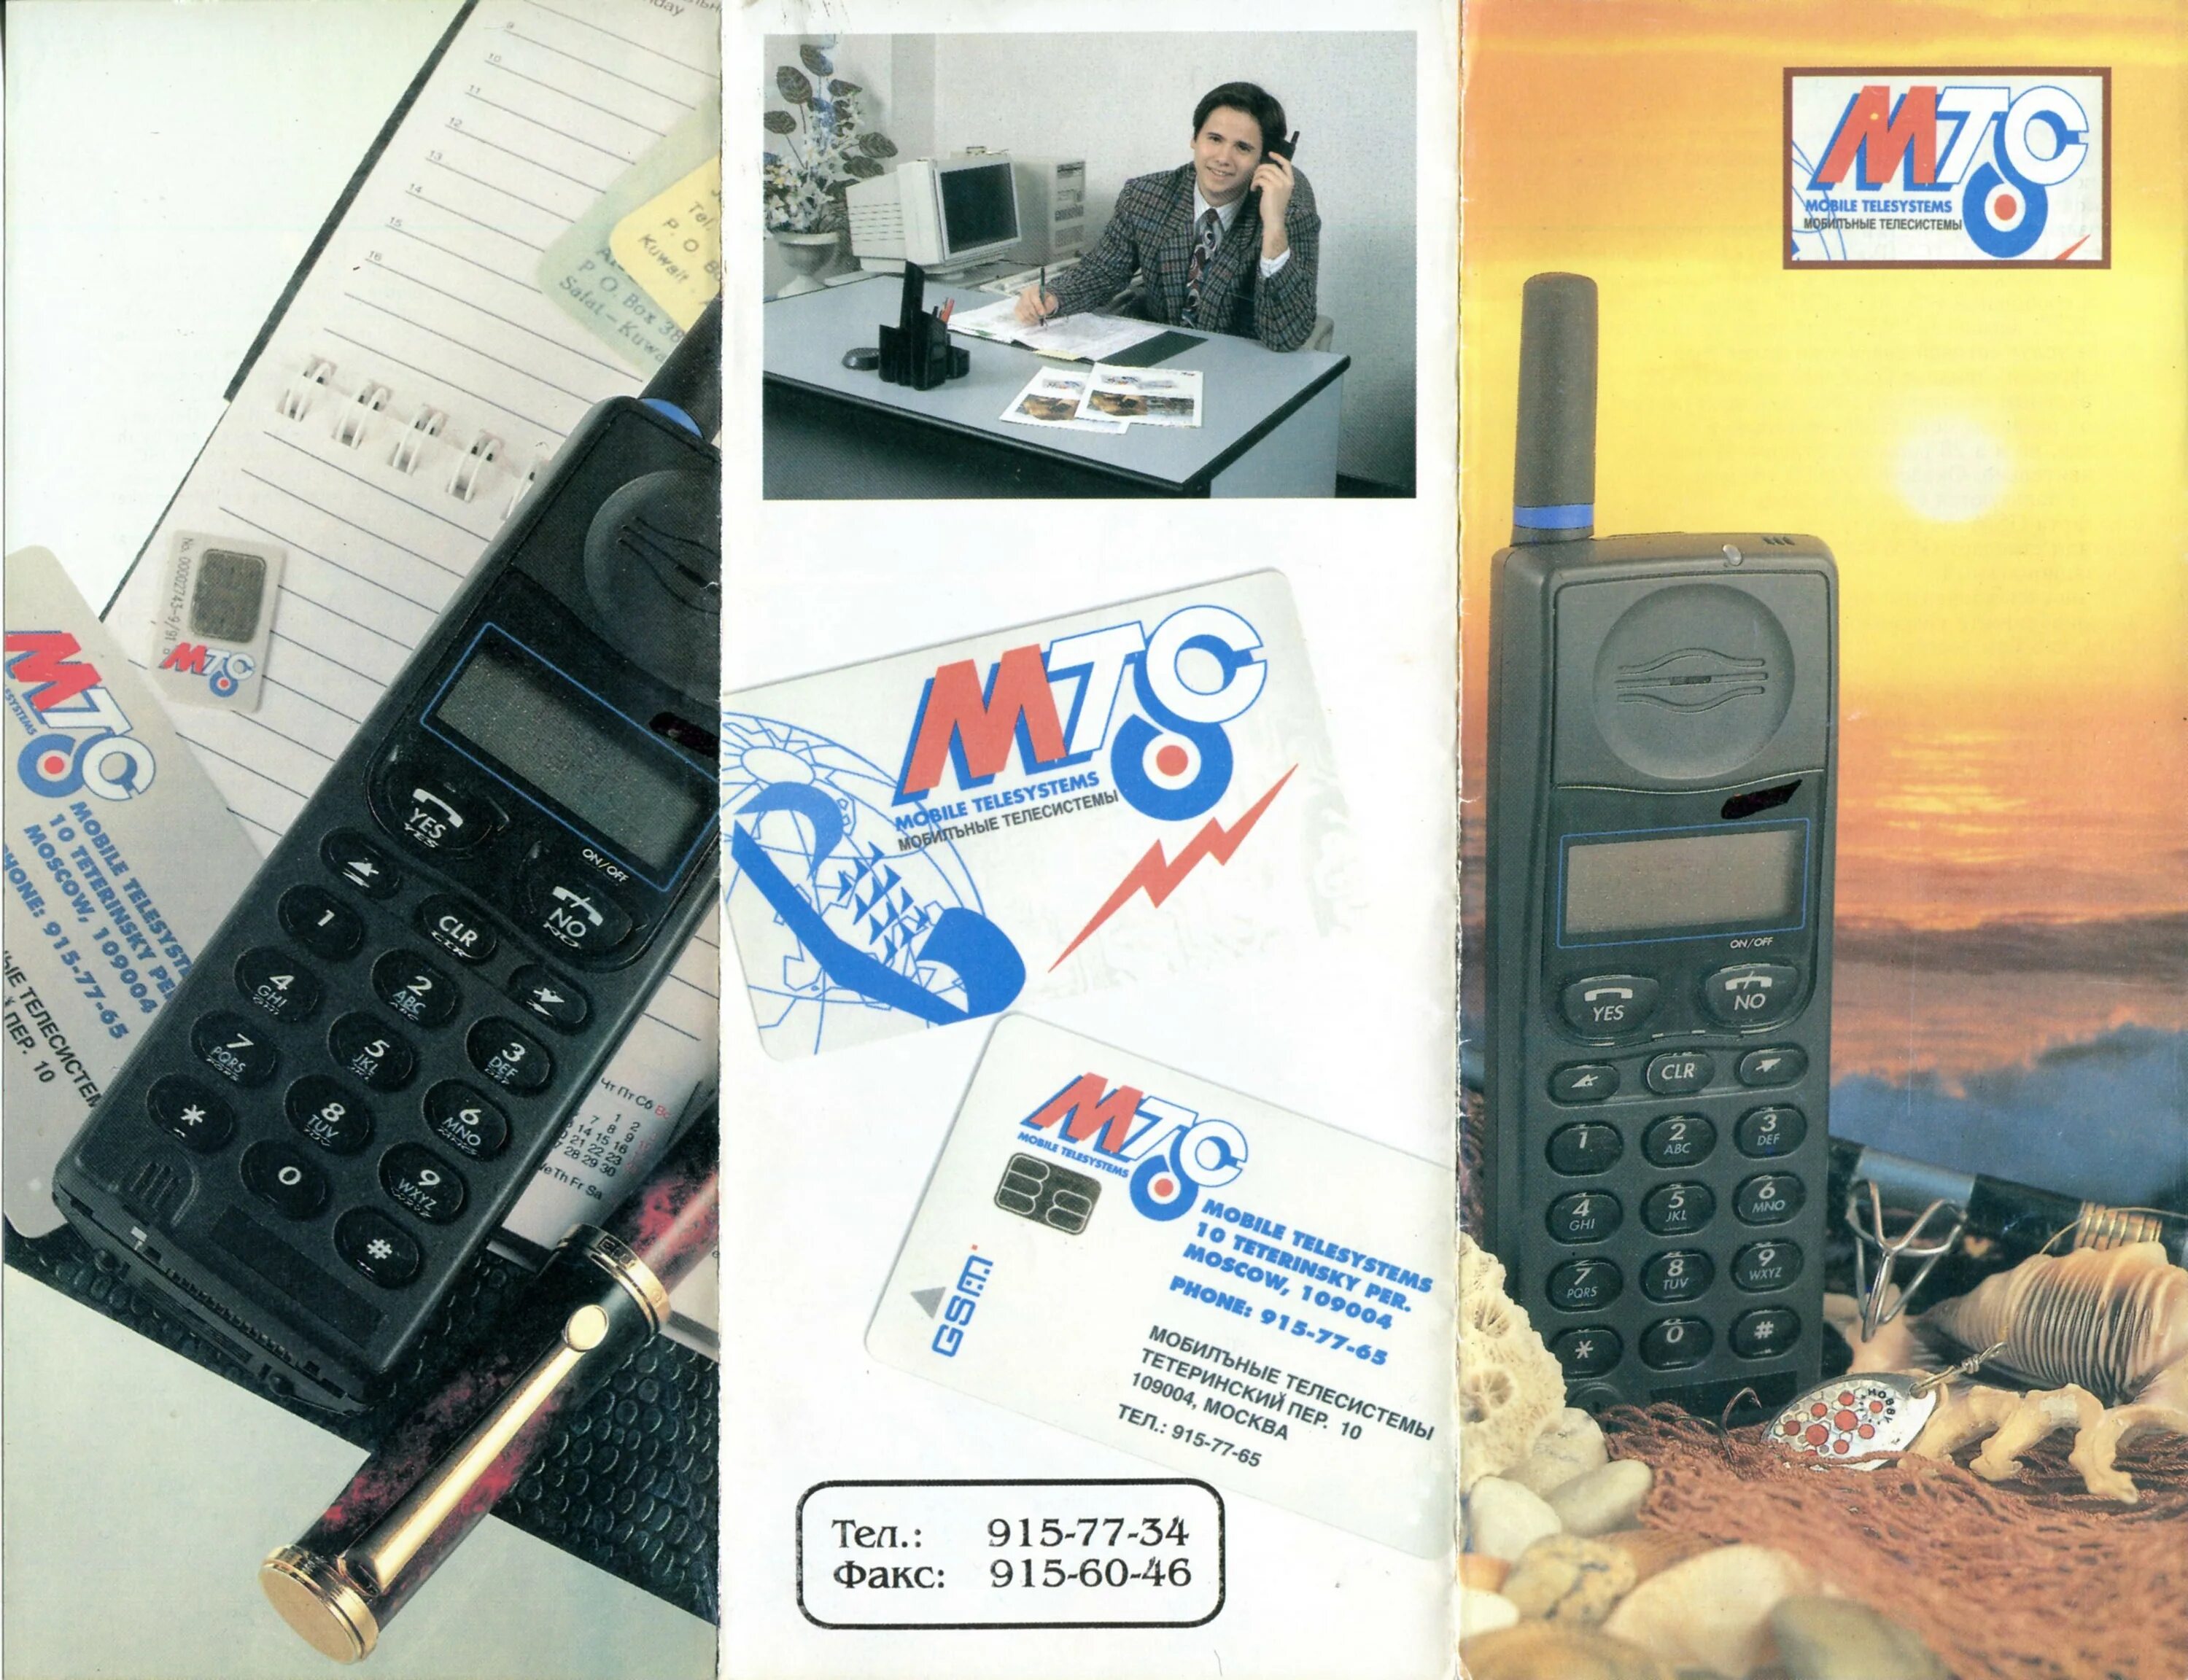 Мтс gsm. Реклама сотовой связи Старая. Реклама сотовой связи 90-х. МТС 1995.